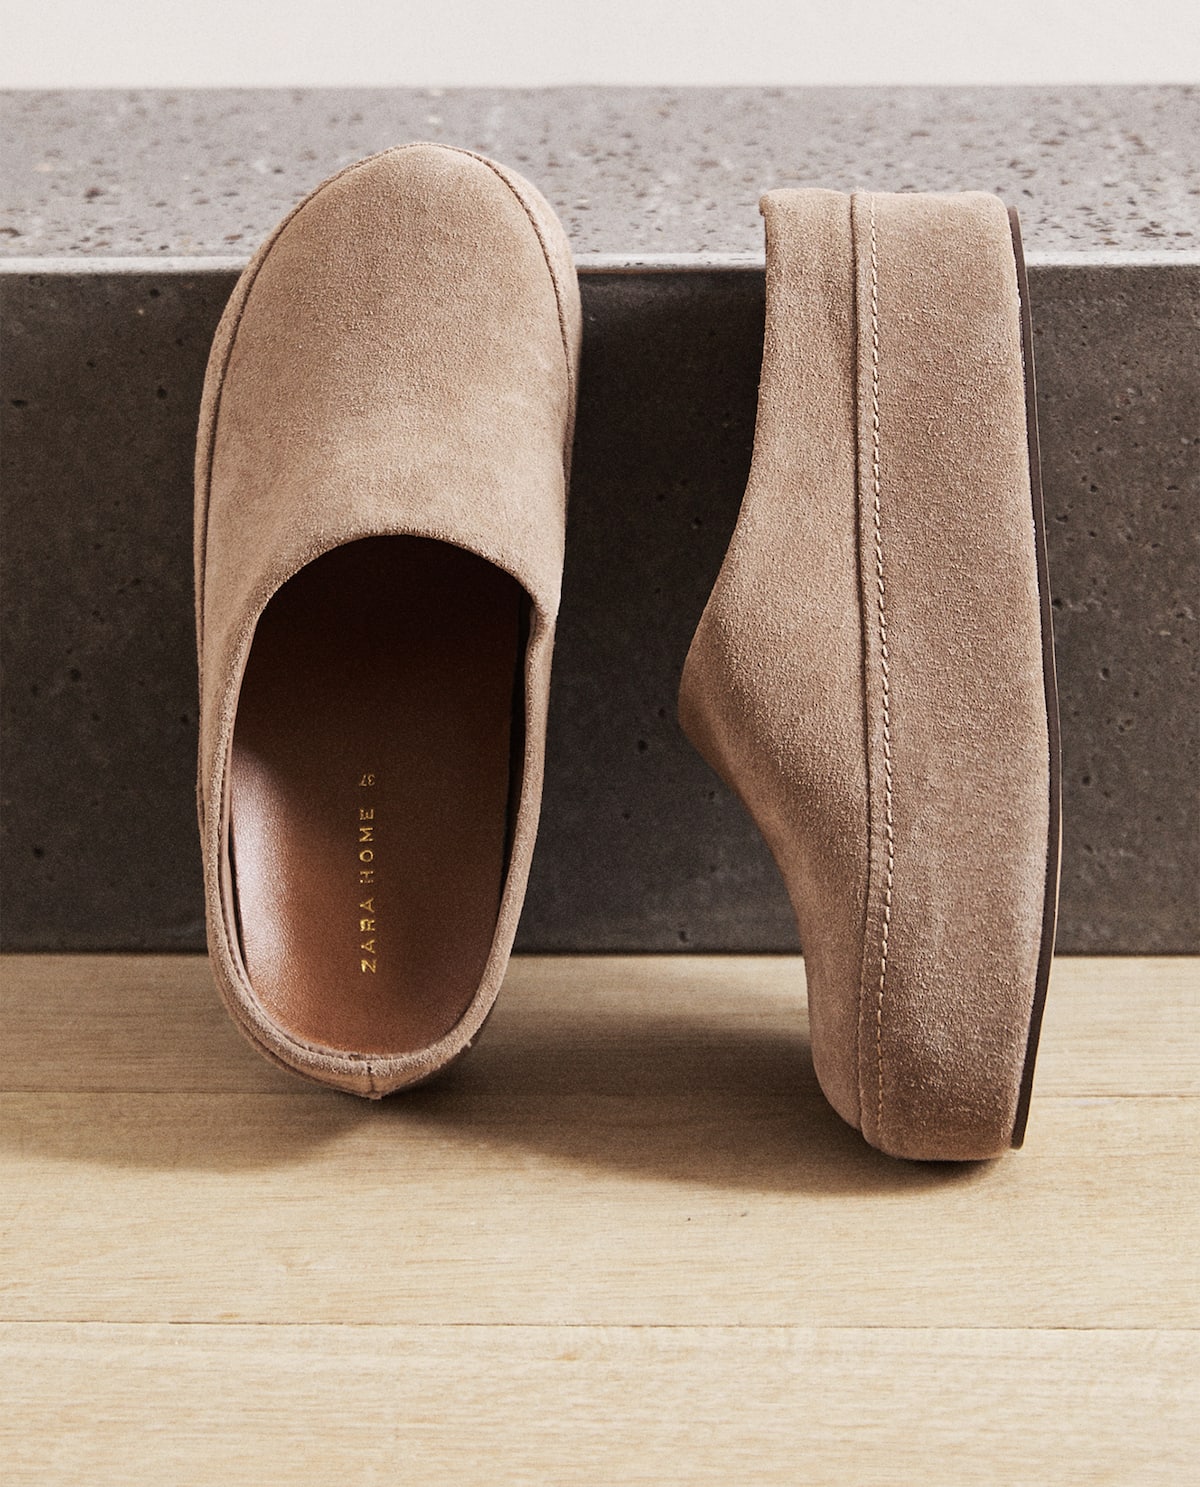 dulce tinción legal Zara Home tiene las zapatillas de ir por casa de piel low cost inspiradas  en UGG